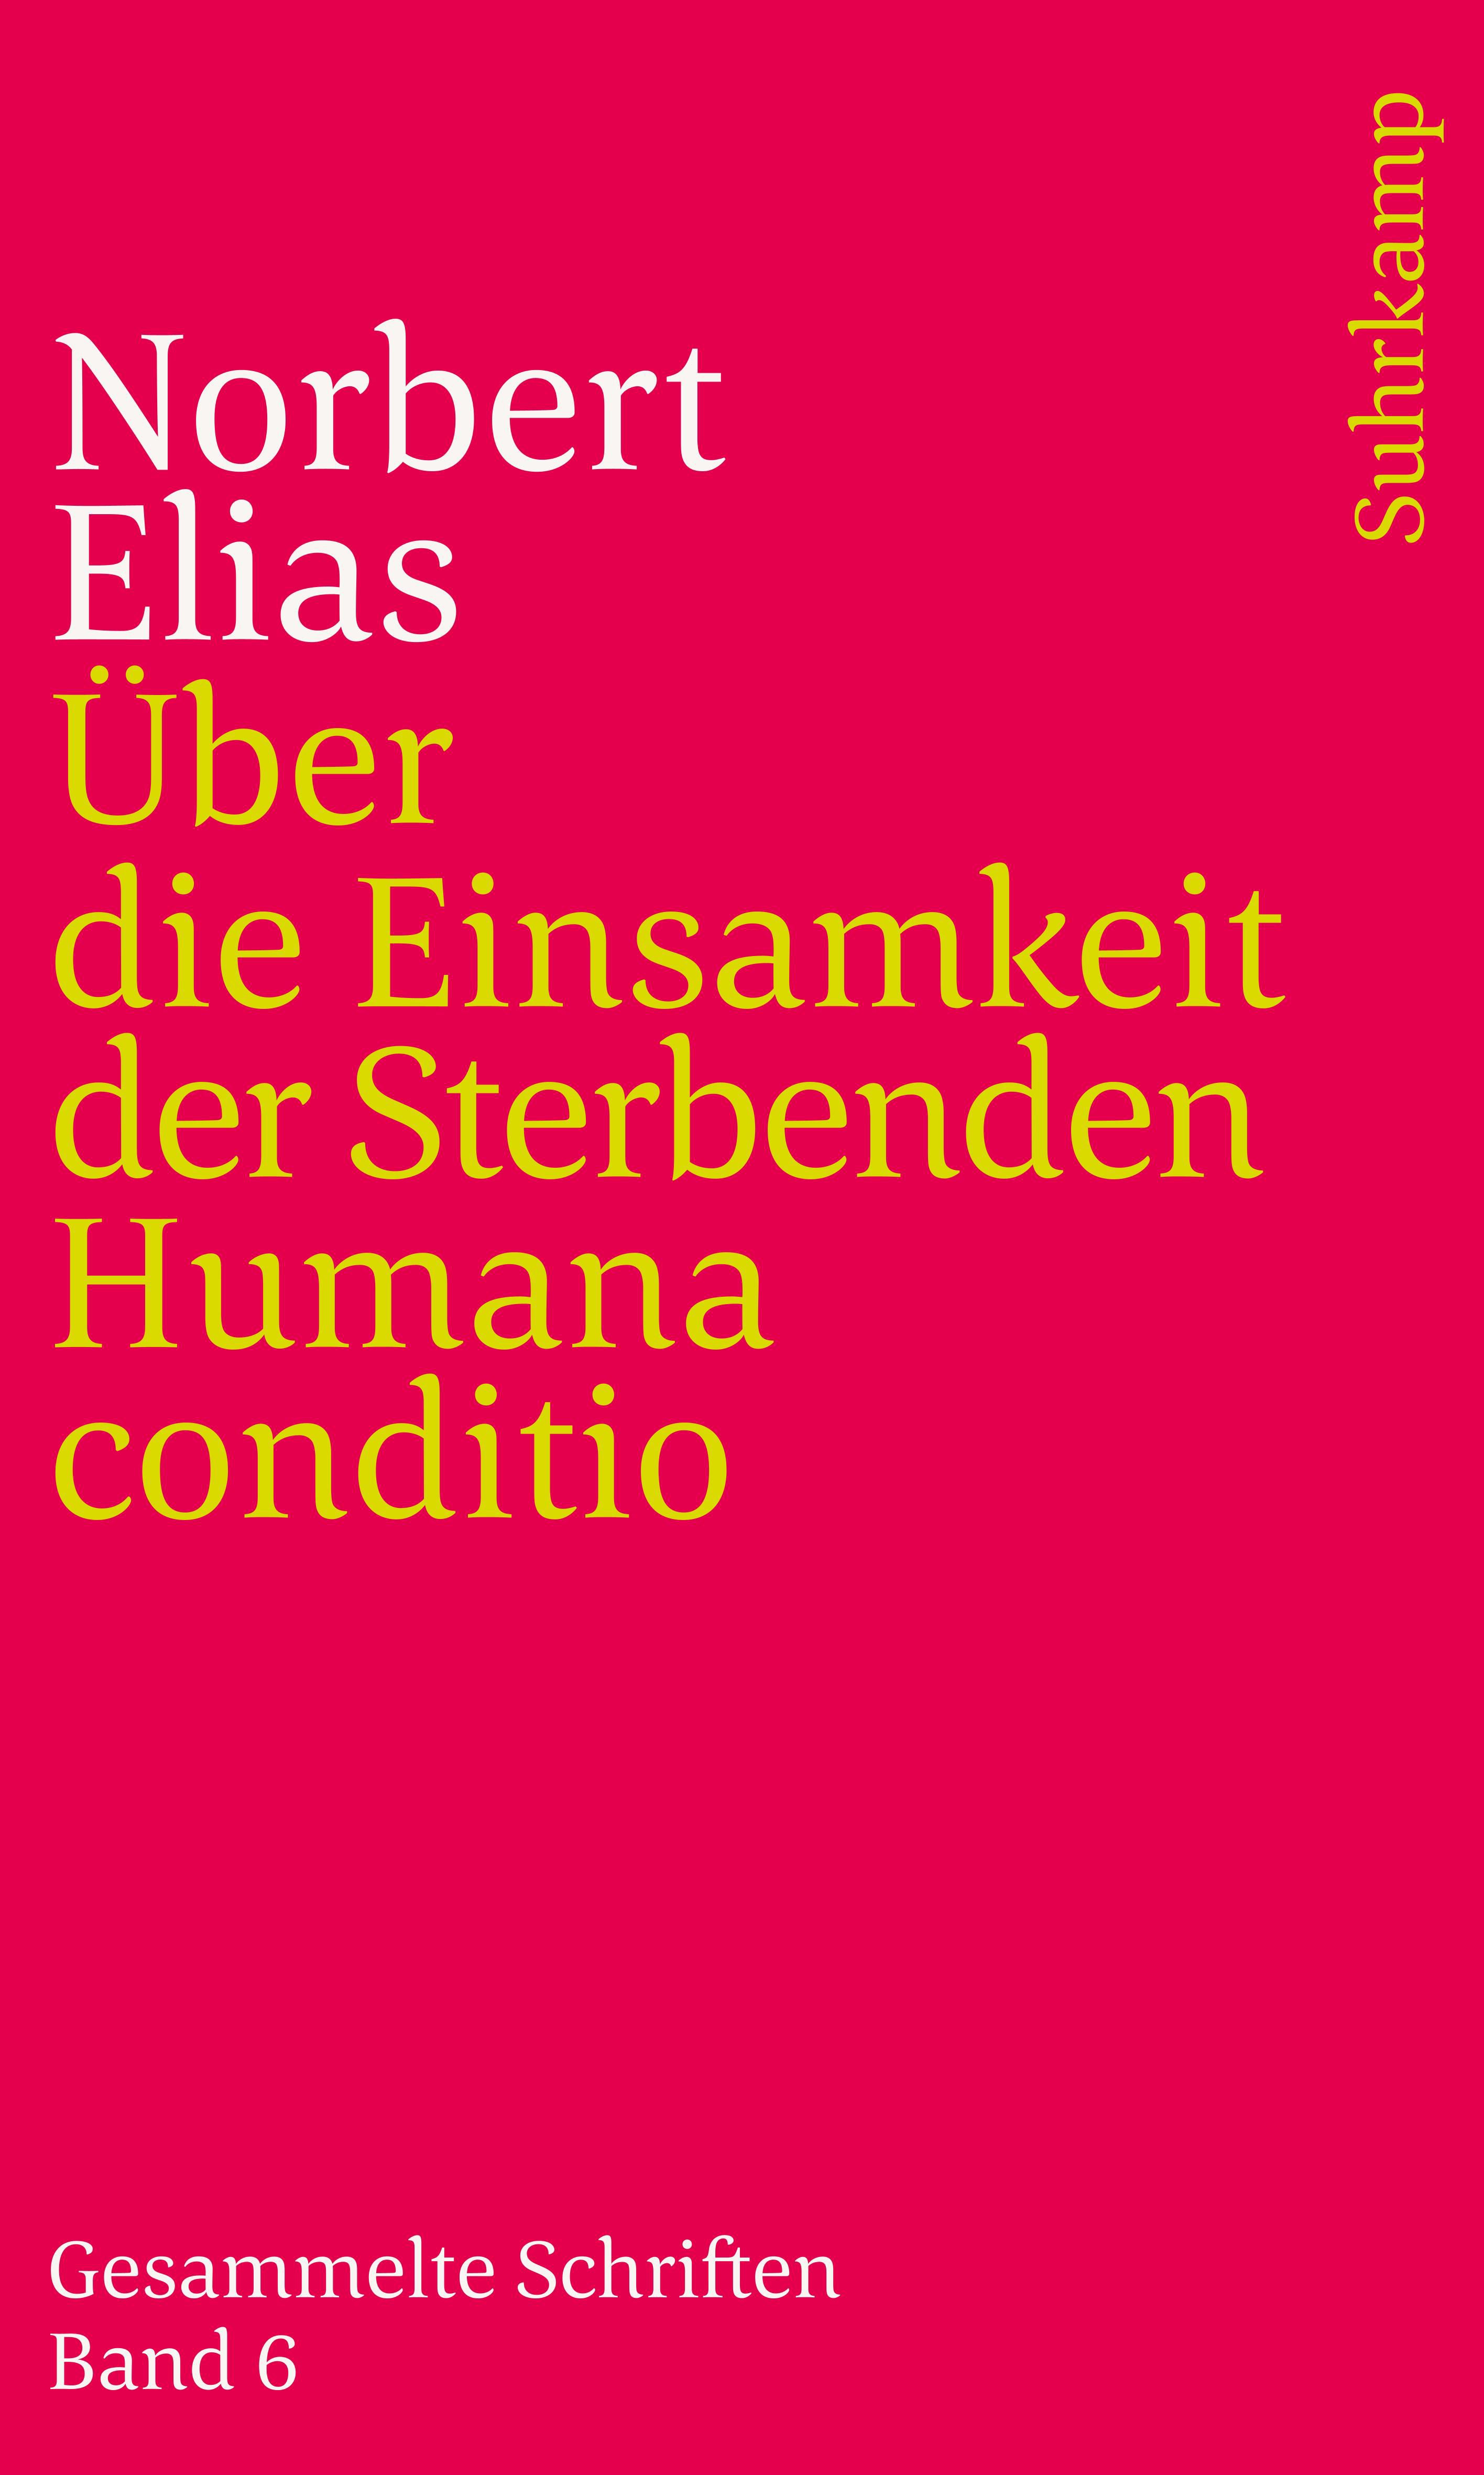 Gesammelte Schriften in 19 Bänden. Buch von Norbert Elias